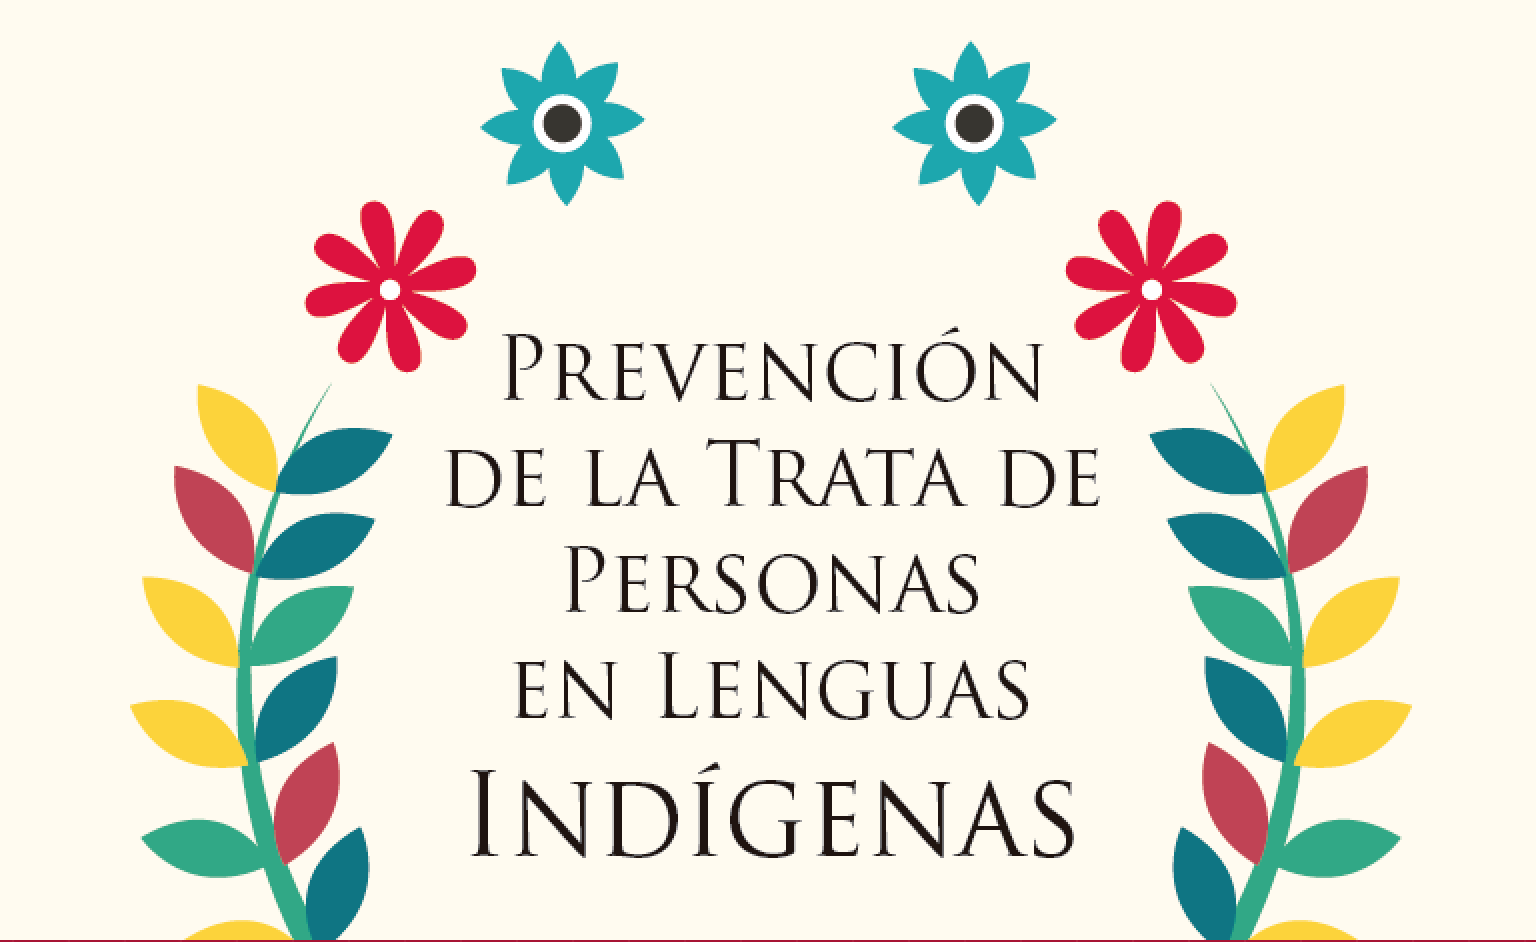 Prevención de la trata de personas en lenguas indígenas